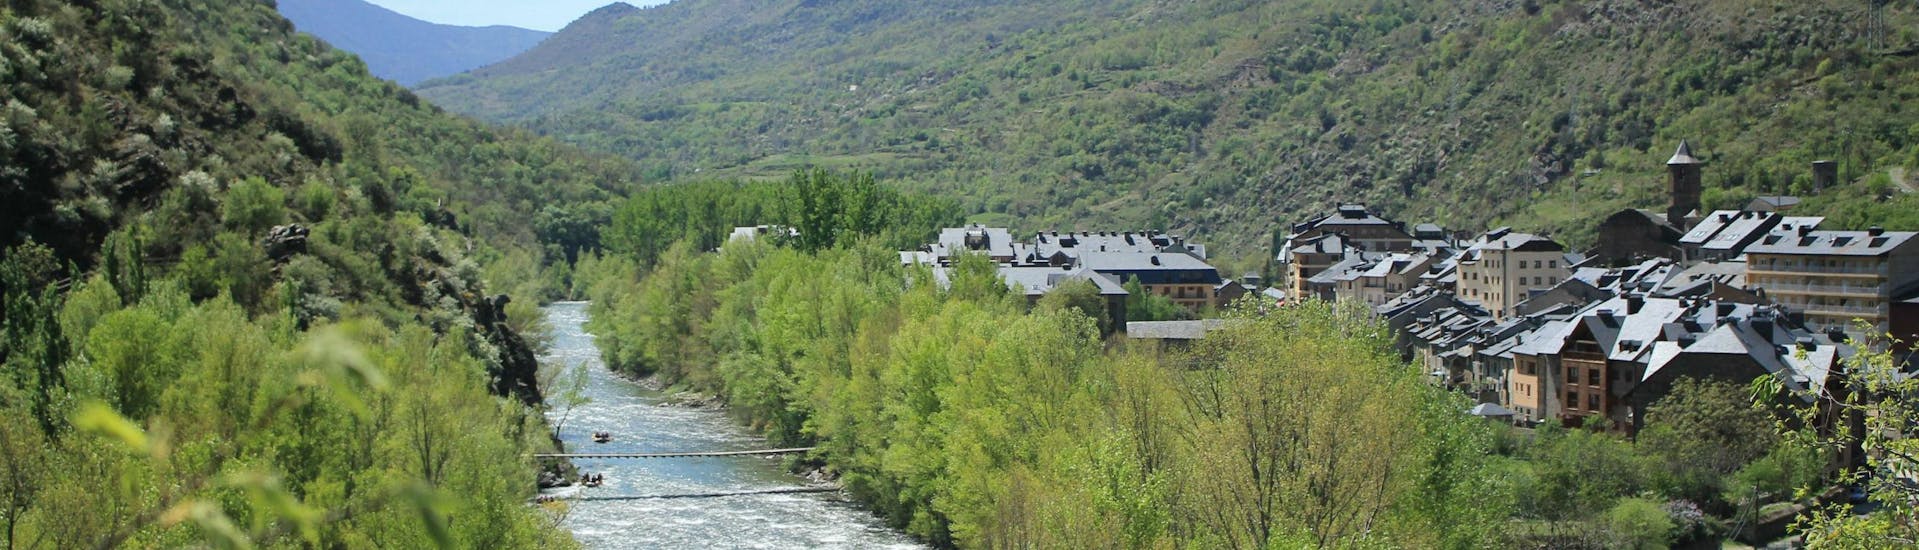 Varios grupos de personas navegan sus lanchas en el Rio Noguera Pallaresa mientras hacen rafting en Pallars Sobirà.